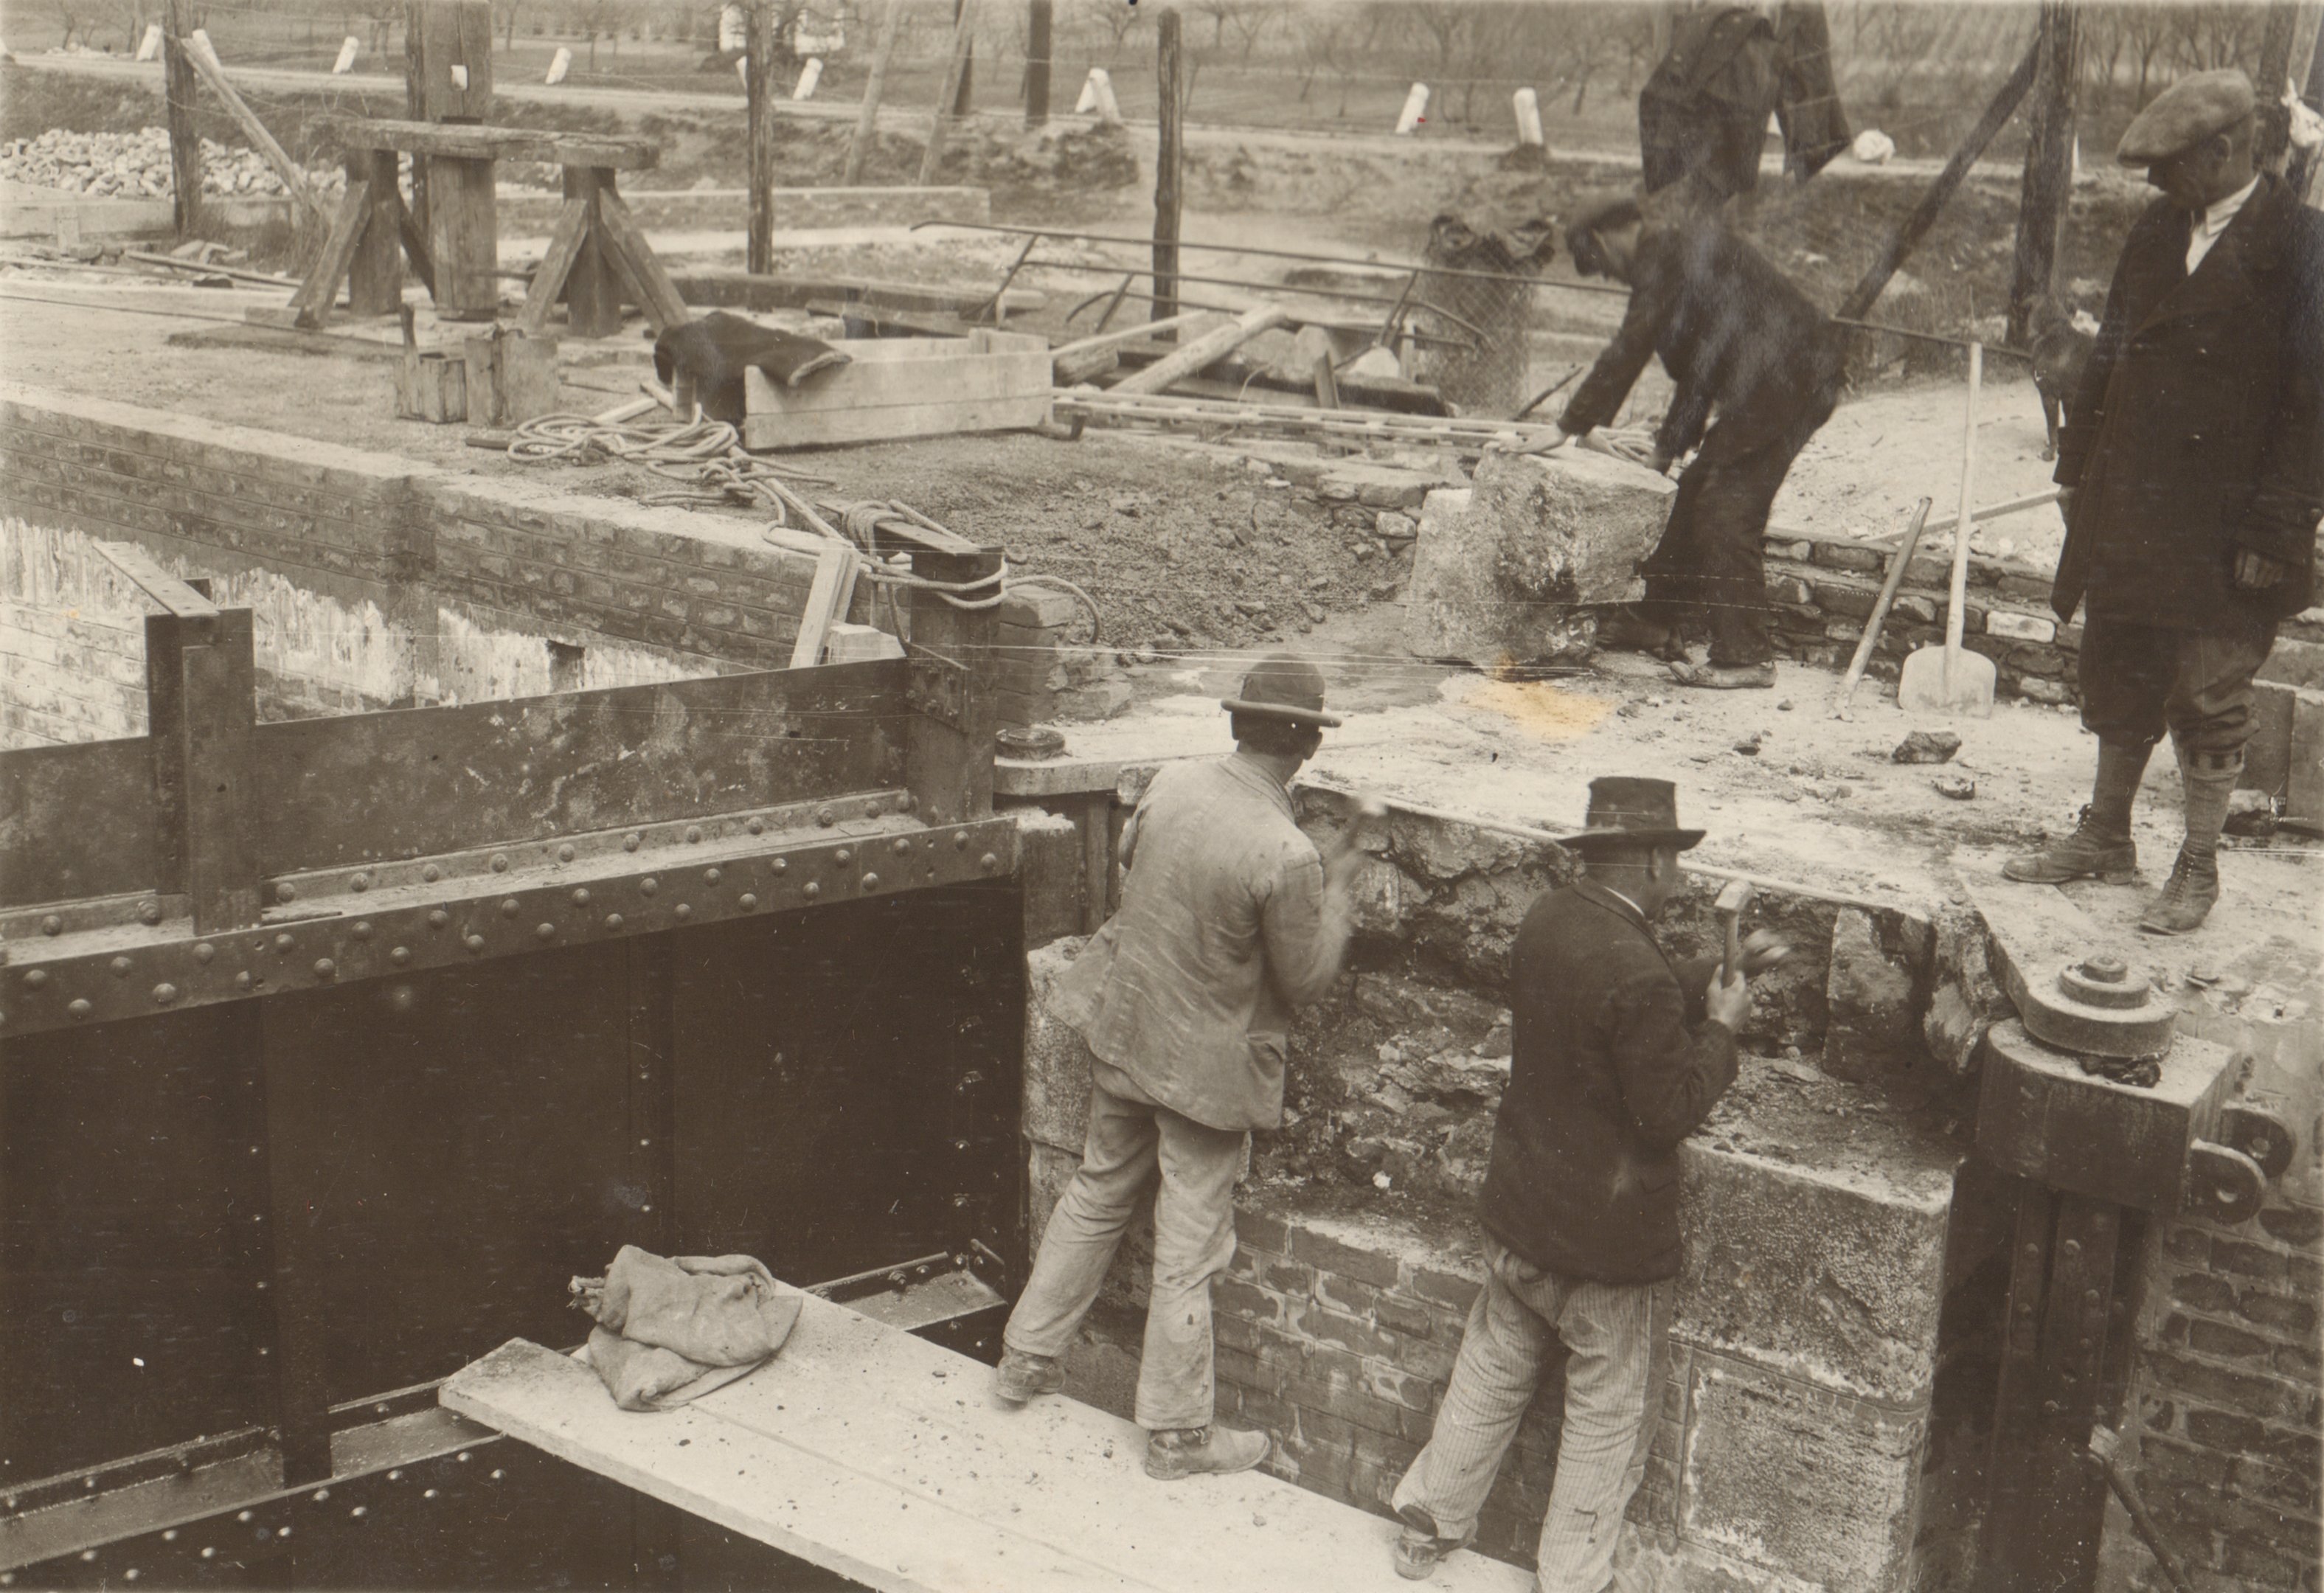 A hajózózsilip javítási munkája. A felső kapu melletti falrész javítás közben (A fal magasítása munkában), 1932. április 21. (Magyar Környezetvédelmi és Vízügyi Múzeum - Duna Múzeum CC BY-NC-SA)